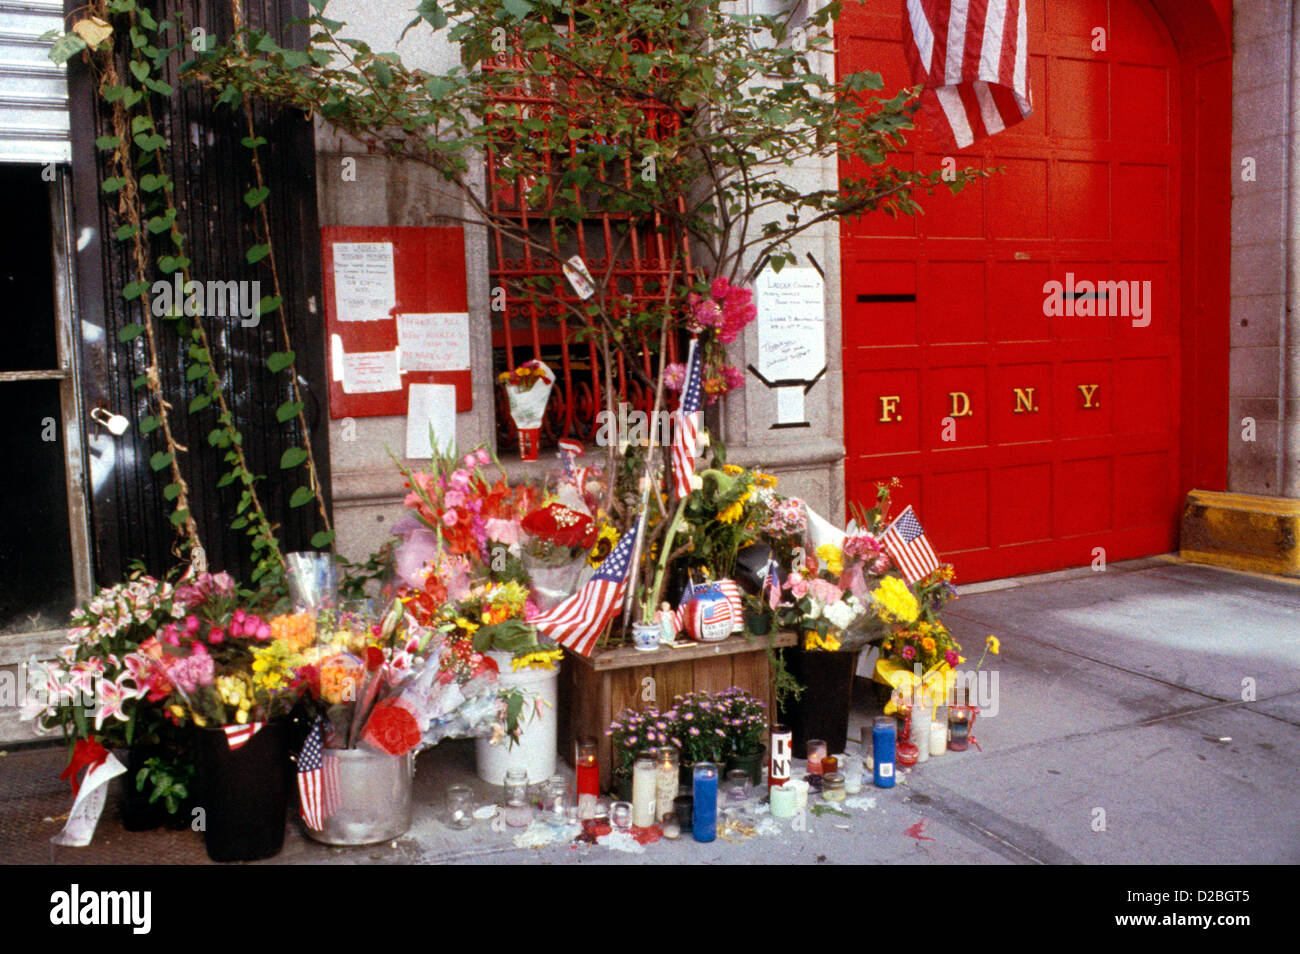 La ville de New York, le 11 septembre 2001. Monuments à la Caserne # 14 à la suite de l'attaque du World Trade Center Banque D'Images